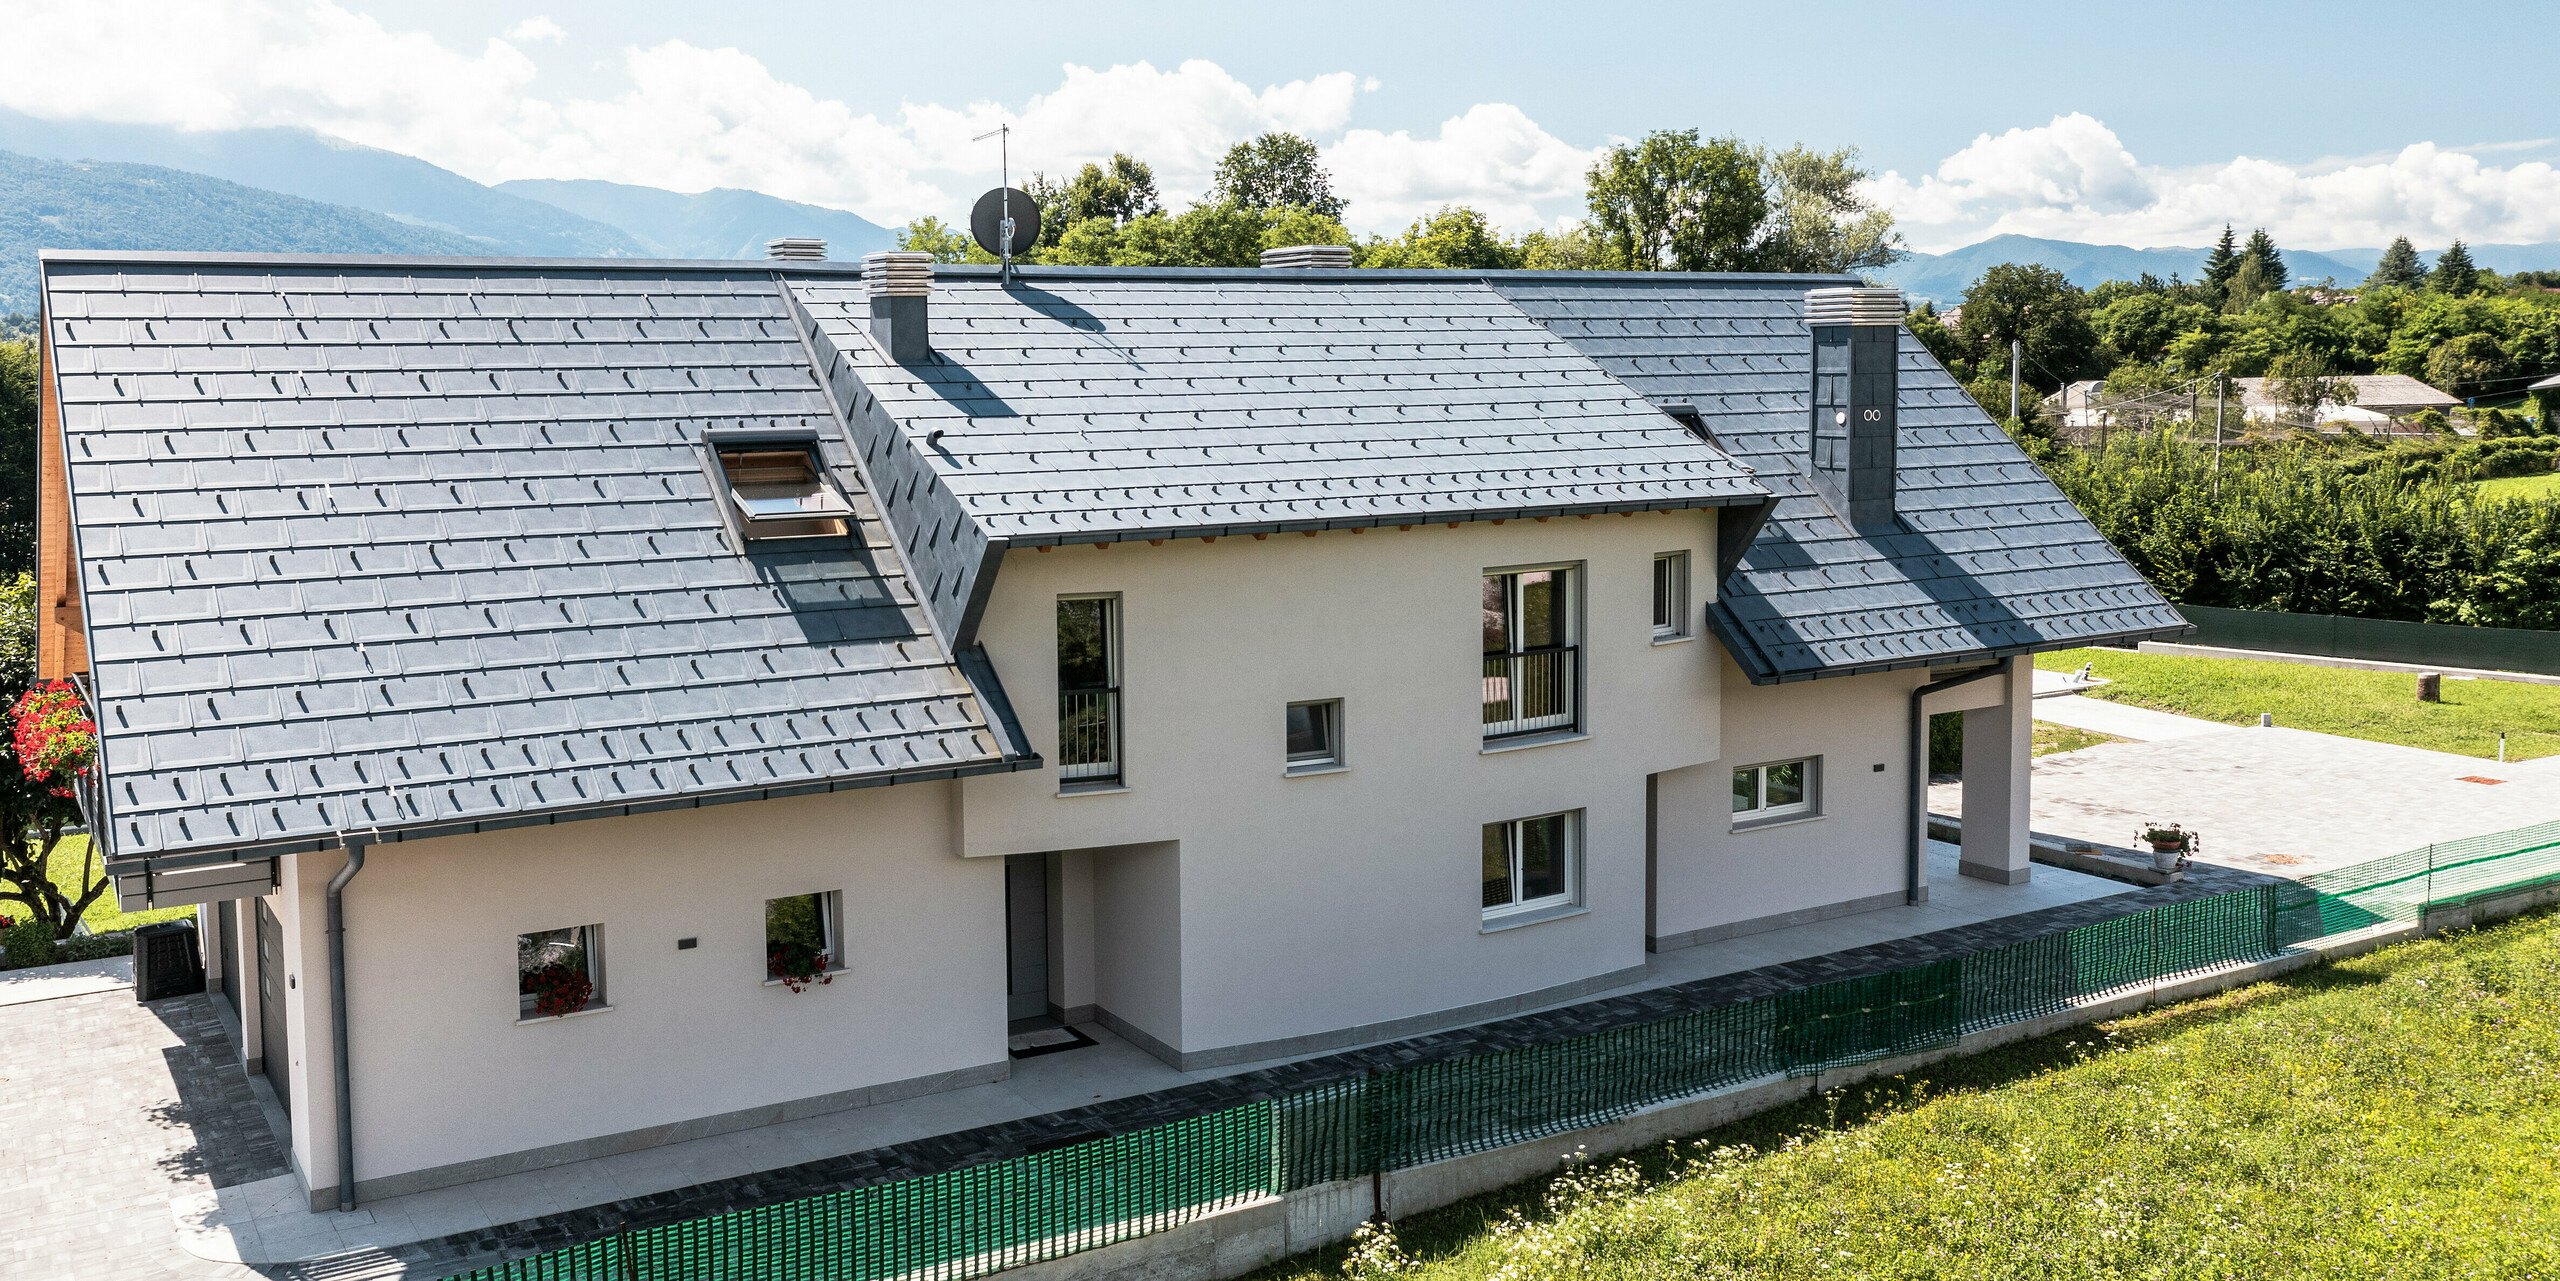 Rodinný dom v talianskom Belluno s elegantnou strechou PREFA zo strešných panelov R.16 vo farbe P.10 antracitová. Systém odvodnenia strechy pozostávajúci z hranatého žľabu a odvodňovacej rúry je farebne zladený a dotvára estetický a funkčný dizajn strechy. Svojou tradičnou konštrukciou a moderným strešným materiálom tvorí dom atraktívny kontrast k malebnej horskej kulisy.